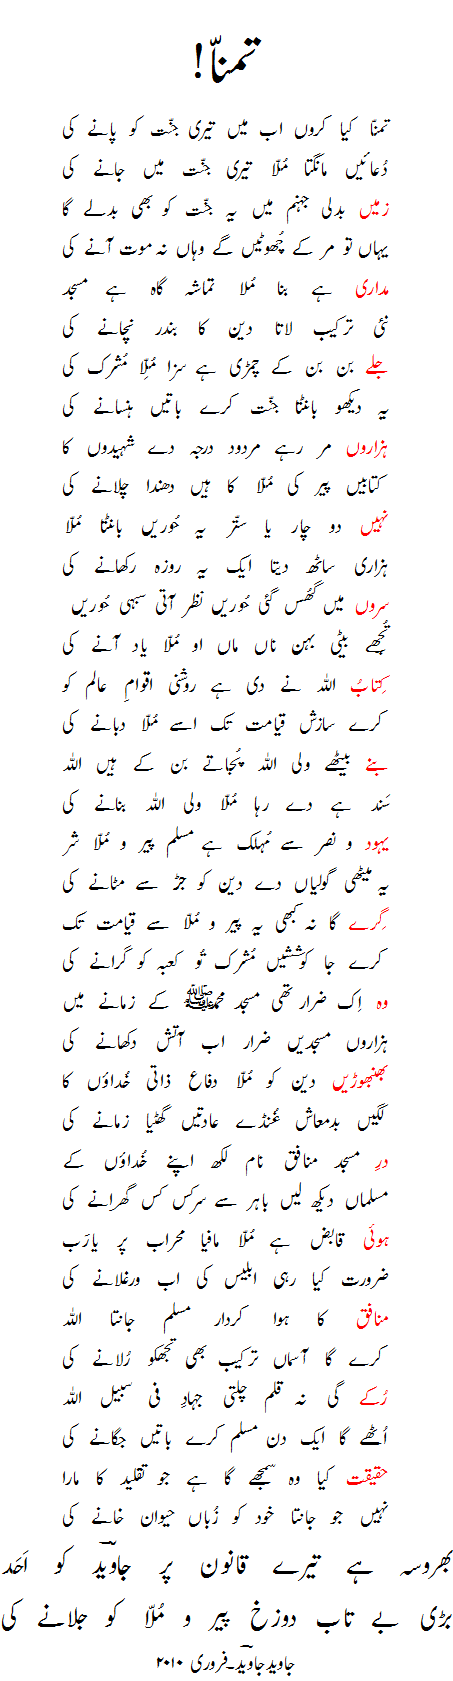 Hell is very impatient to burn Pir & Mullah - poem by javed javed